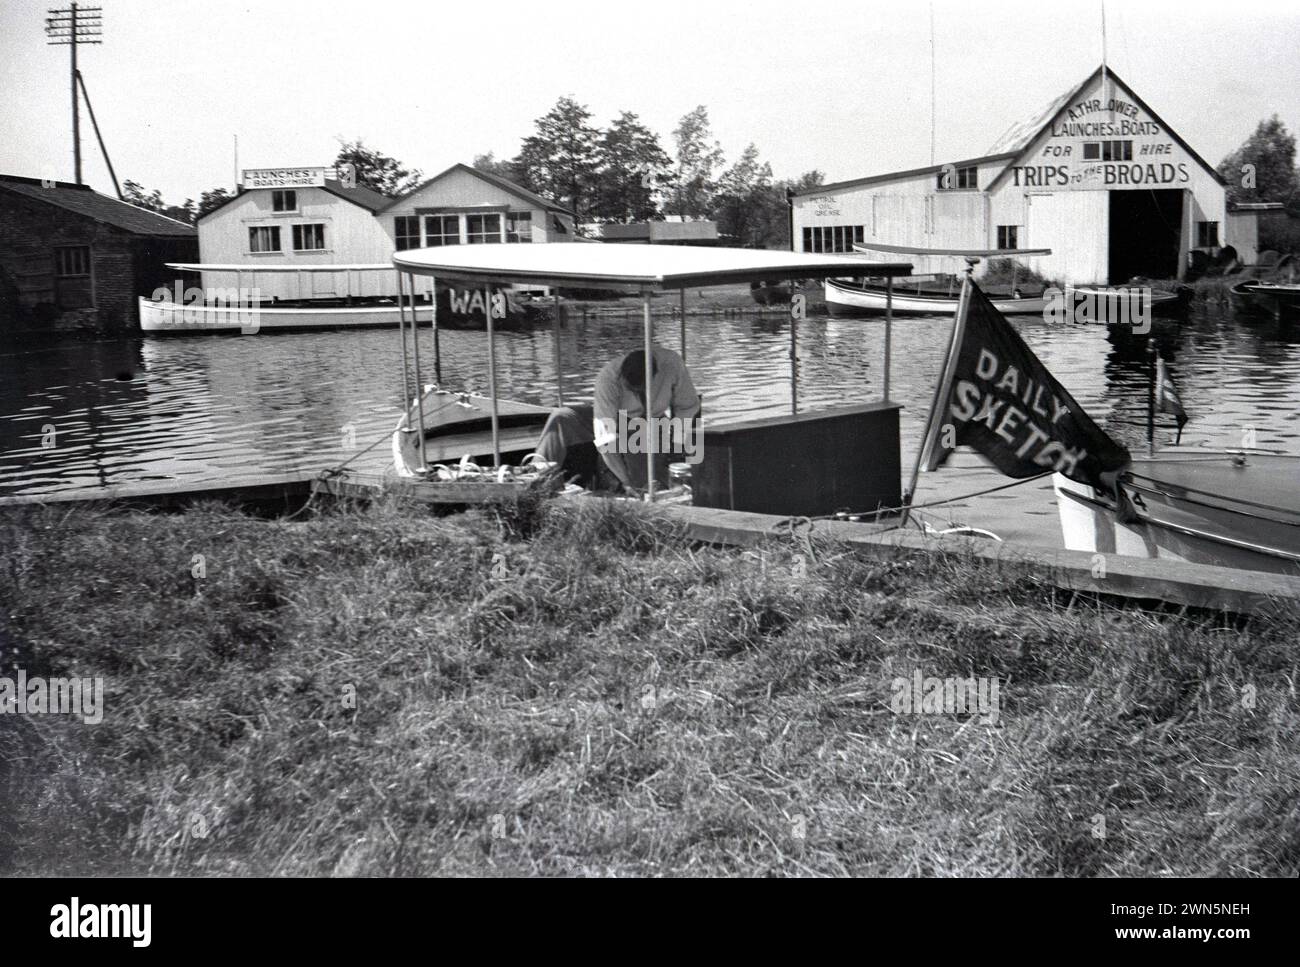 1950er Jahre, historisch, Bootswerften auf den Norfolk Broads... auf der rechten Seite sehen Sie die Werft von A Thrower, die Starts und Boote zum Verleih und Trips zu den Broads bietet. Im Vordergrund ein Mann auf einem kleinen Boot, mit der Flagge Daily Sketch, eine nationale Boulevardzeitung der damaligen Zeit. Stockfoto